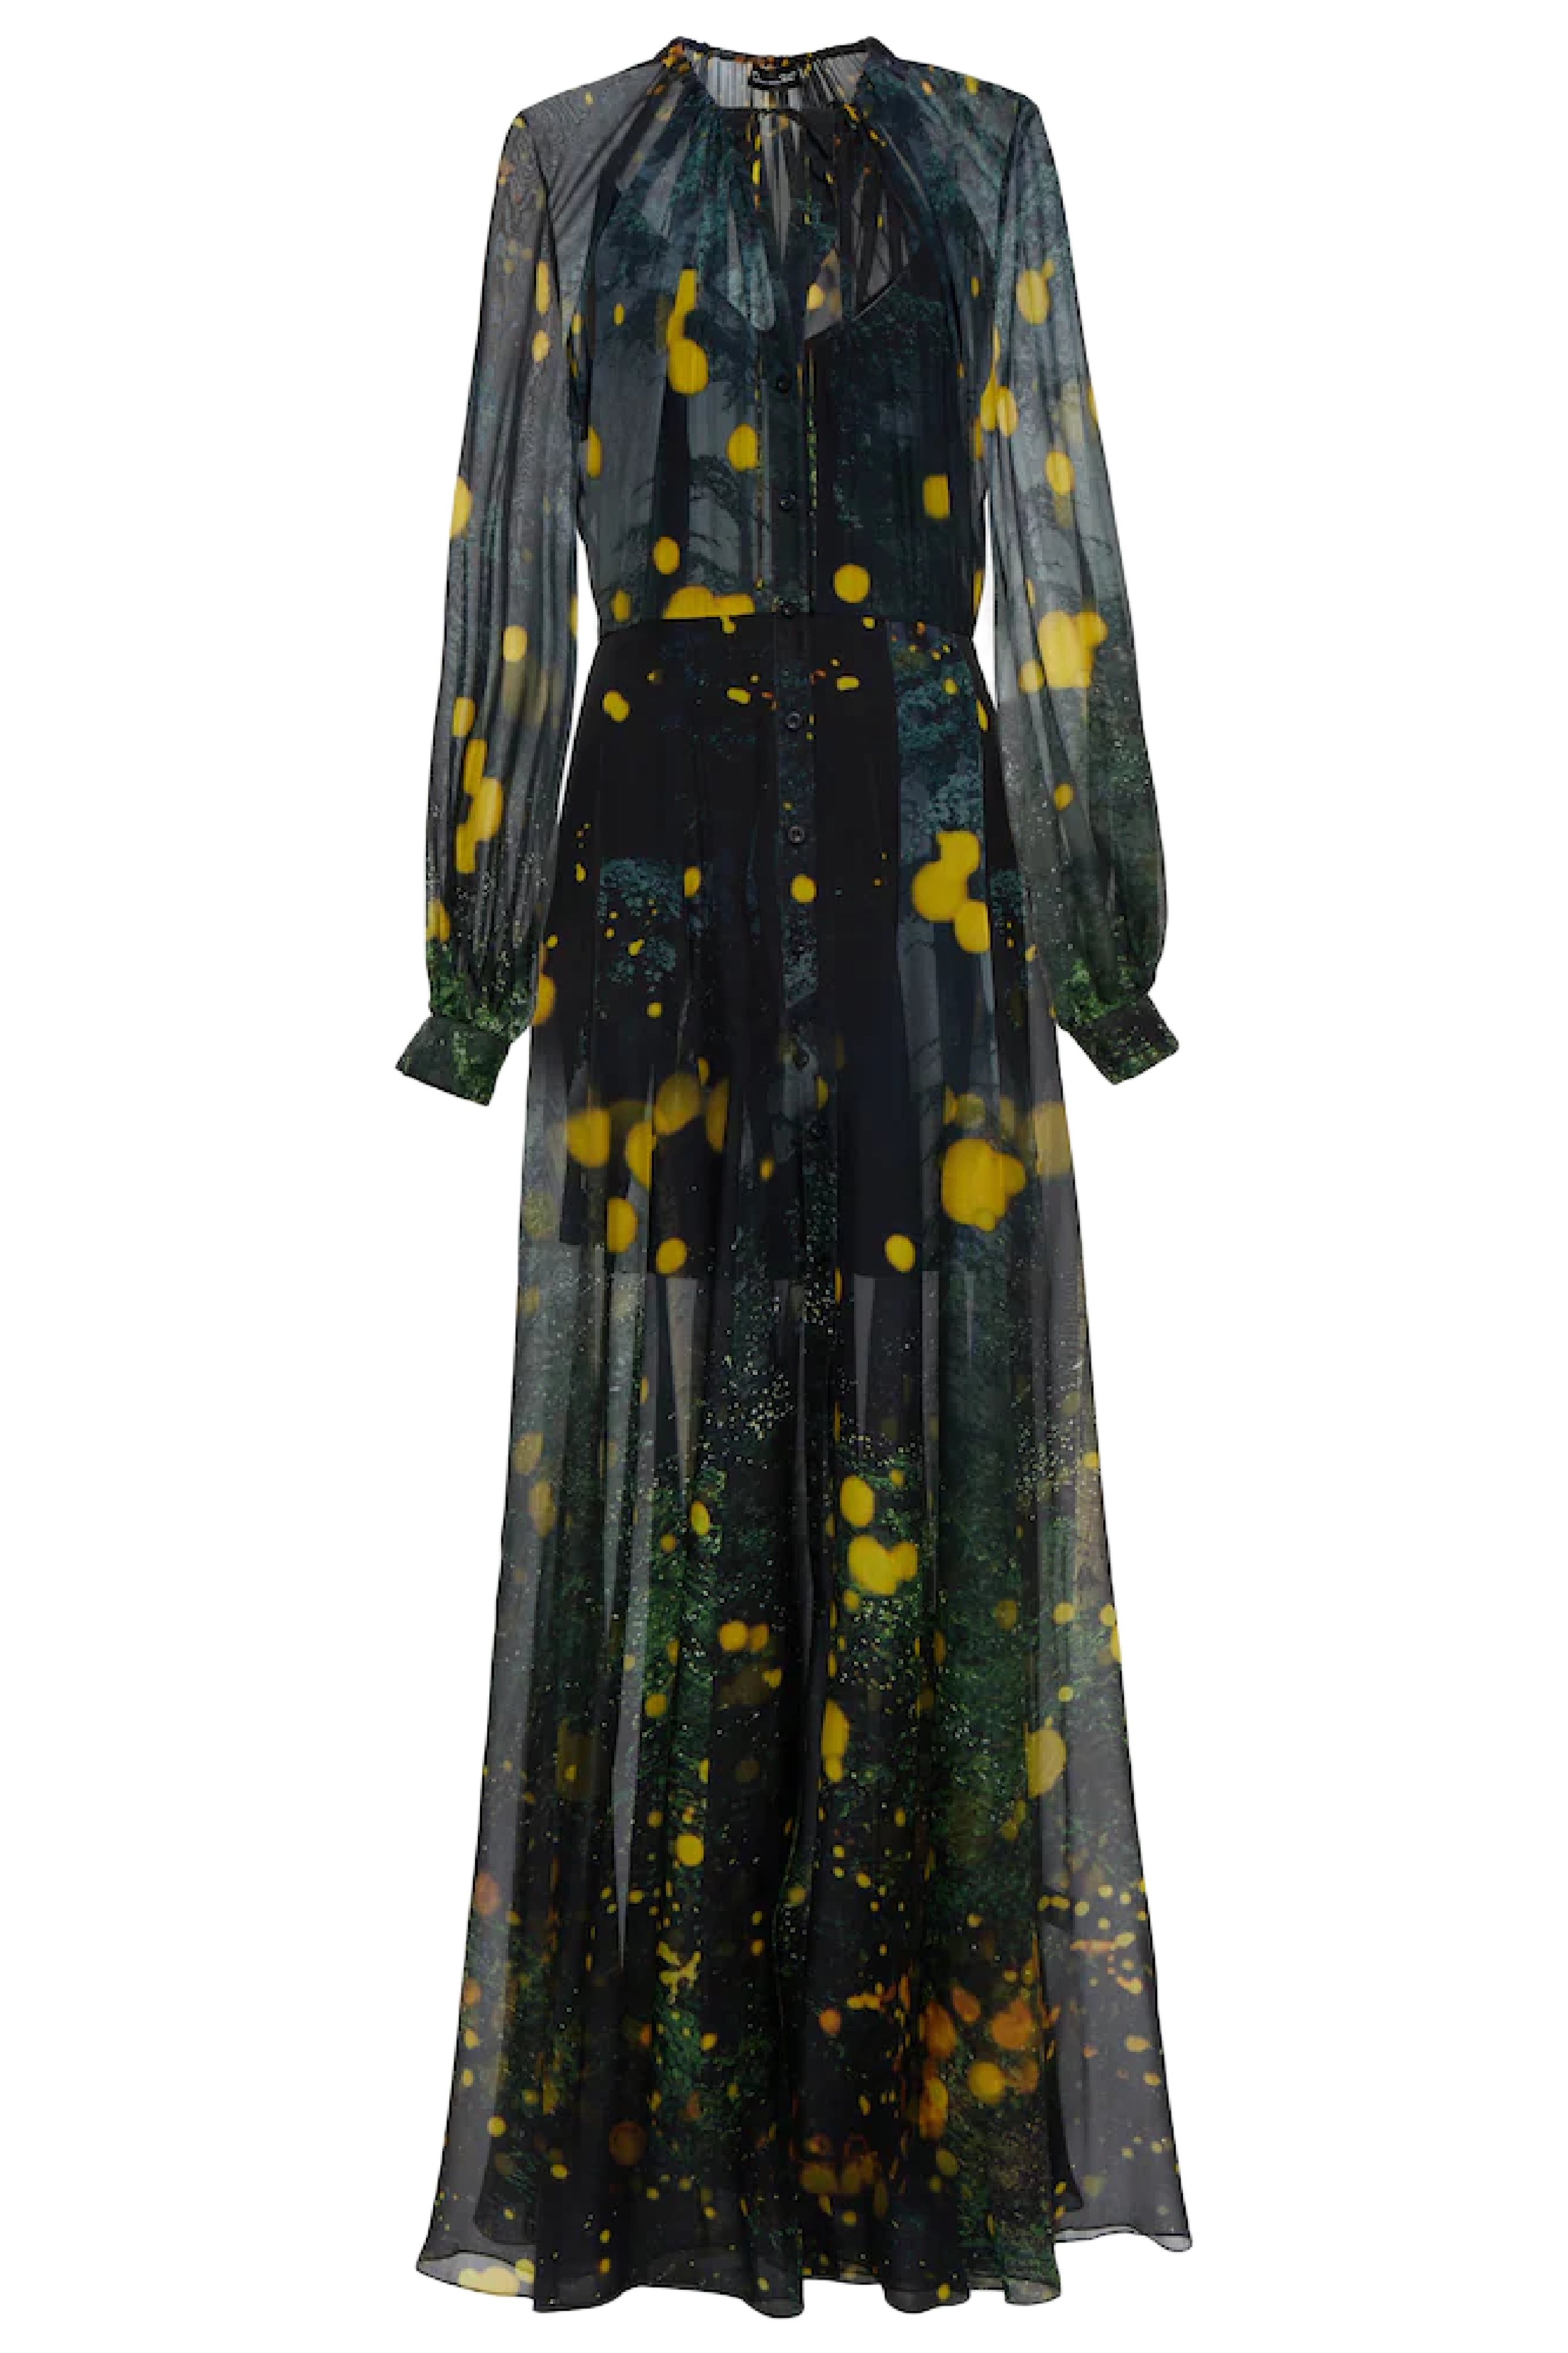 Firefly Satin Chiffon Maxi Dress